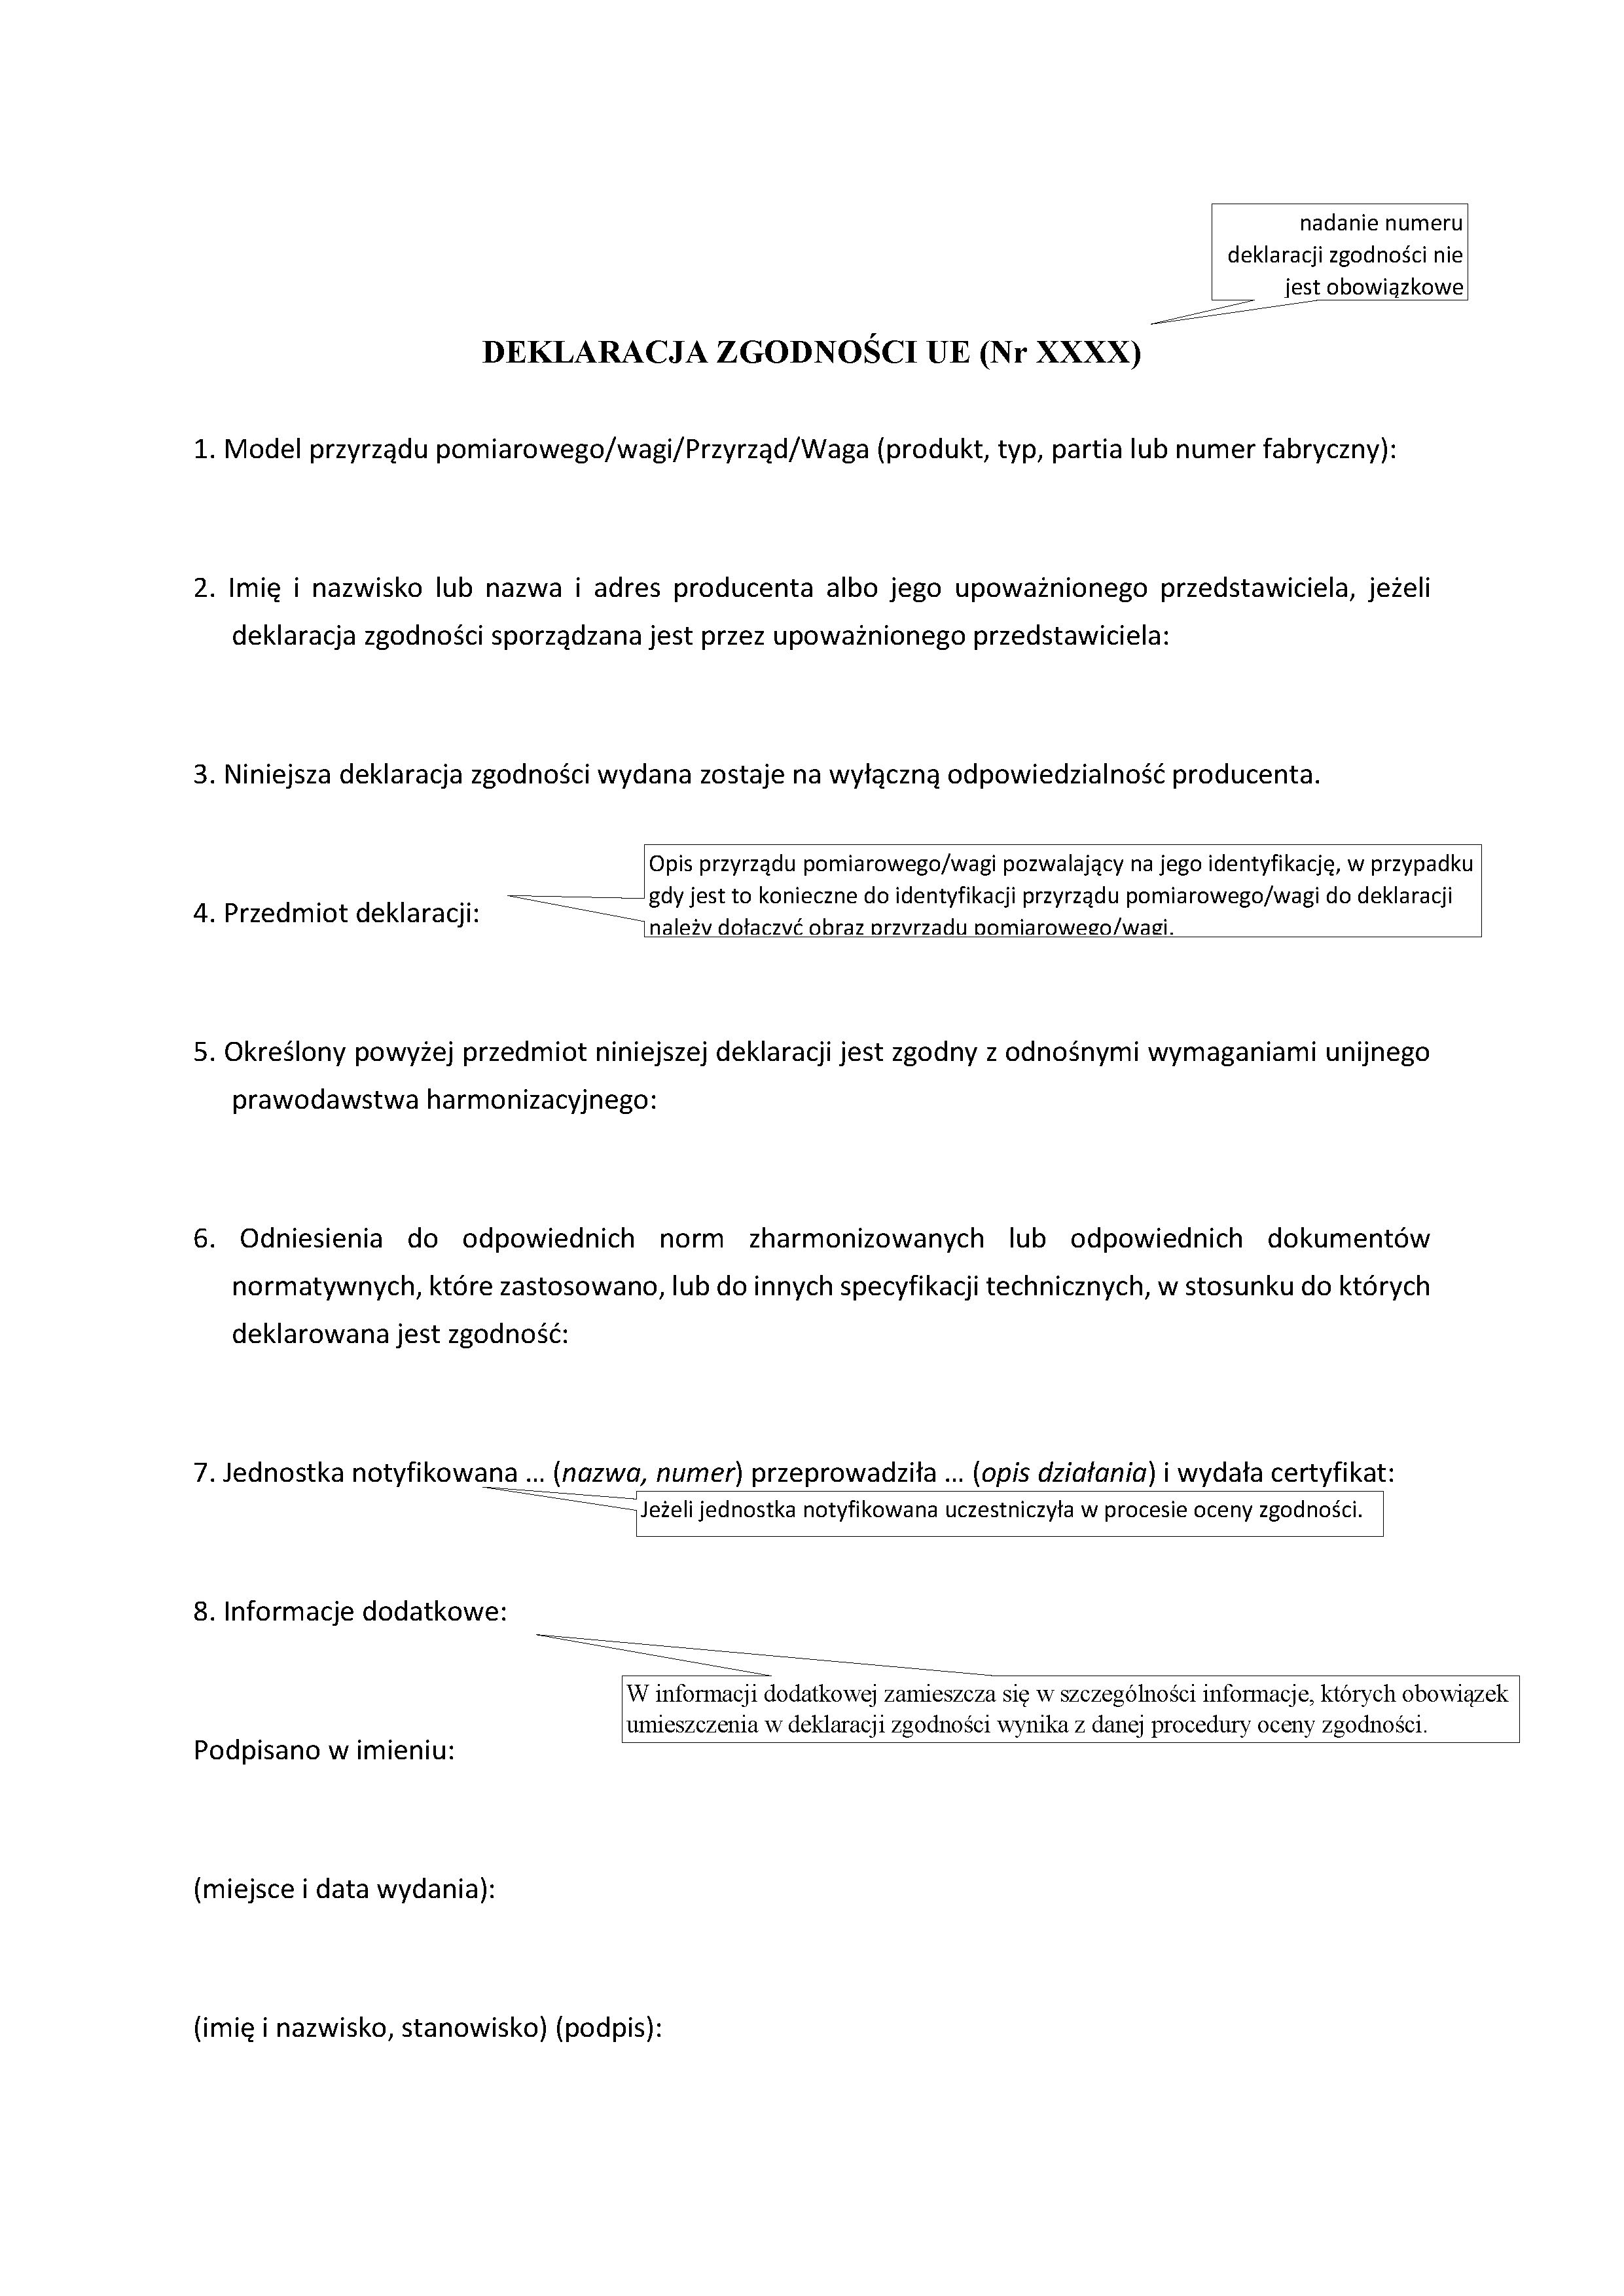 Zdjęcie deklaracji zgodności UE. Plik czytalny jest załączony pod tekstem. 